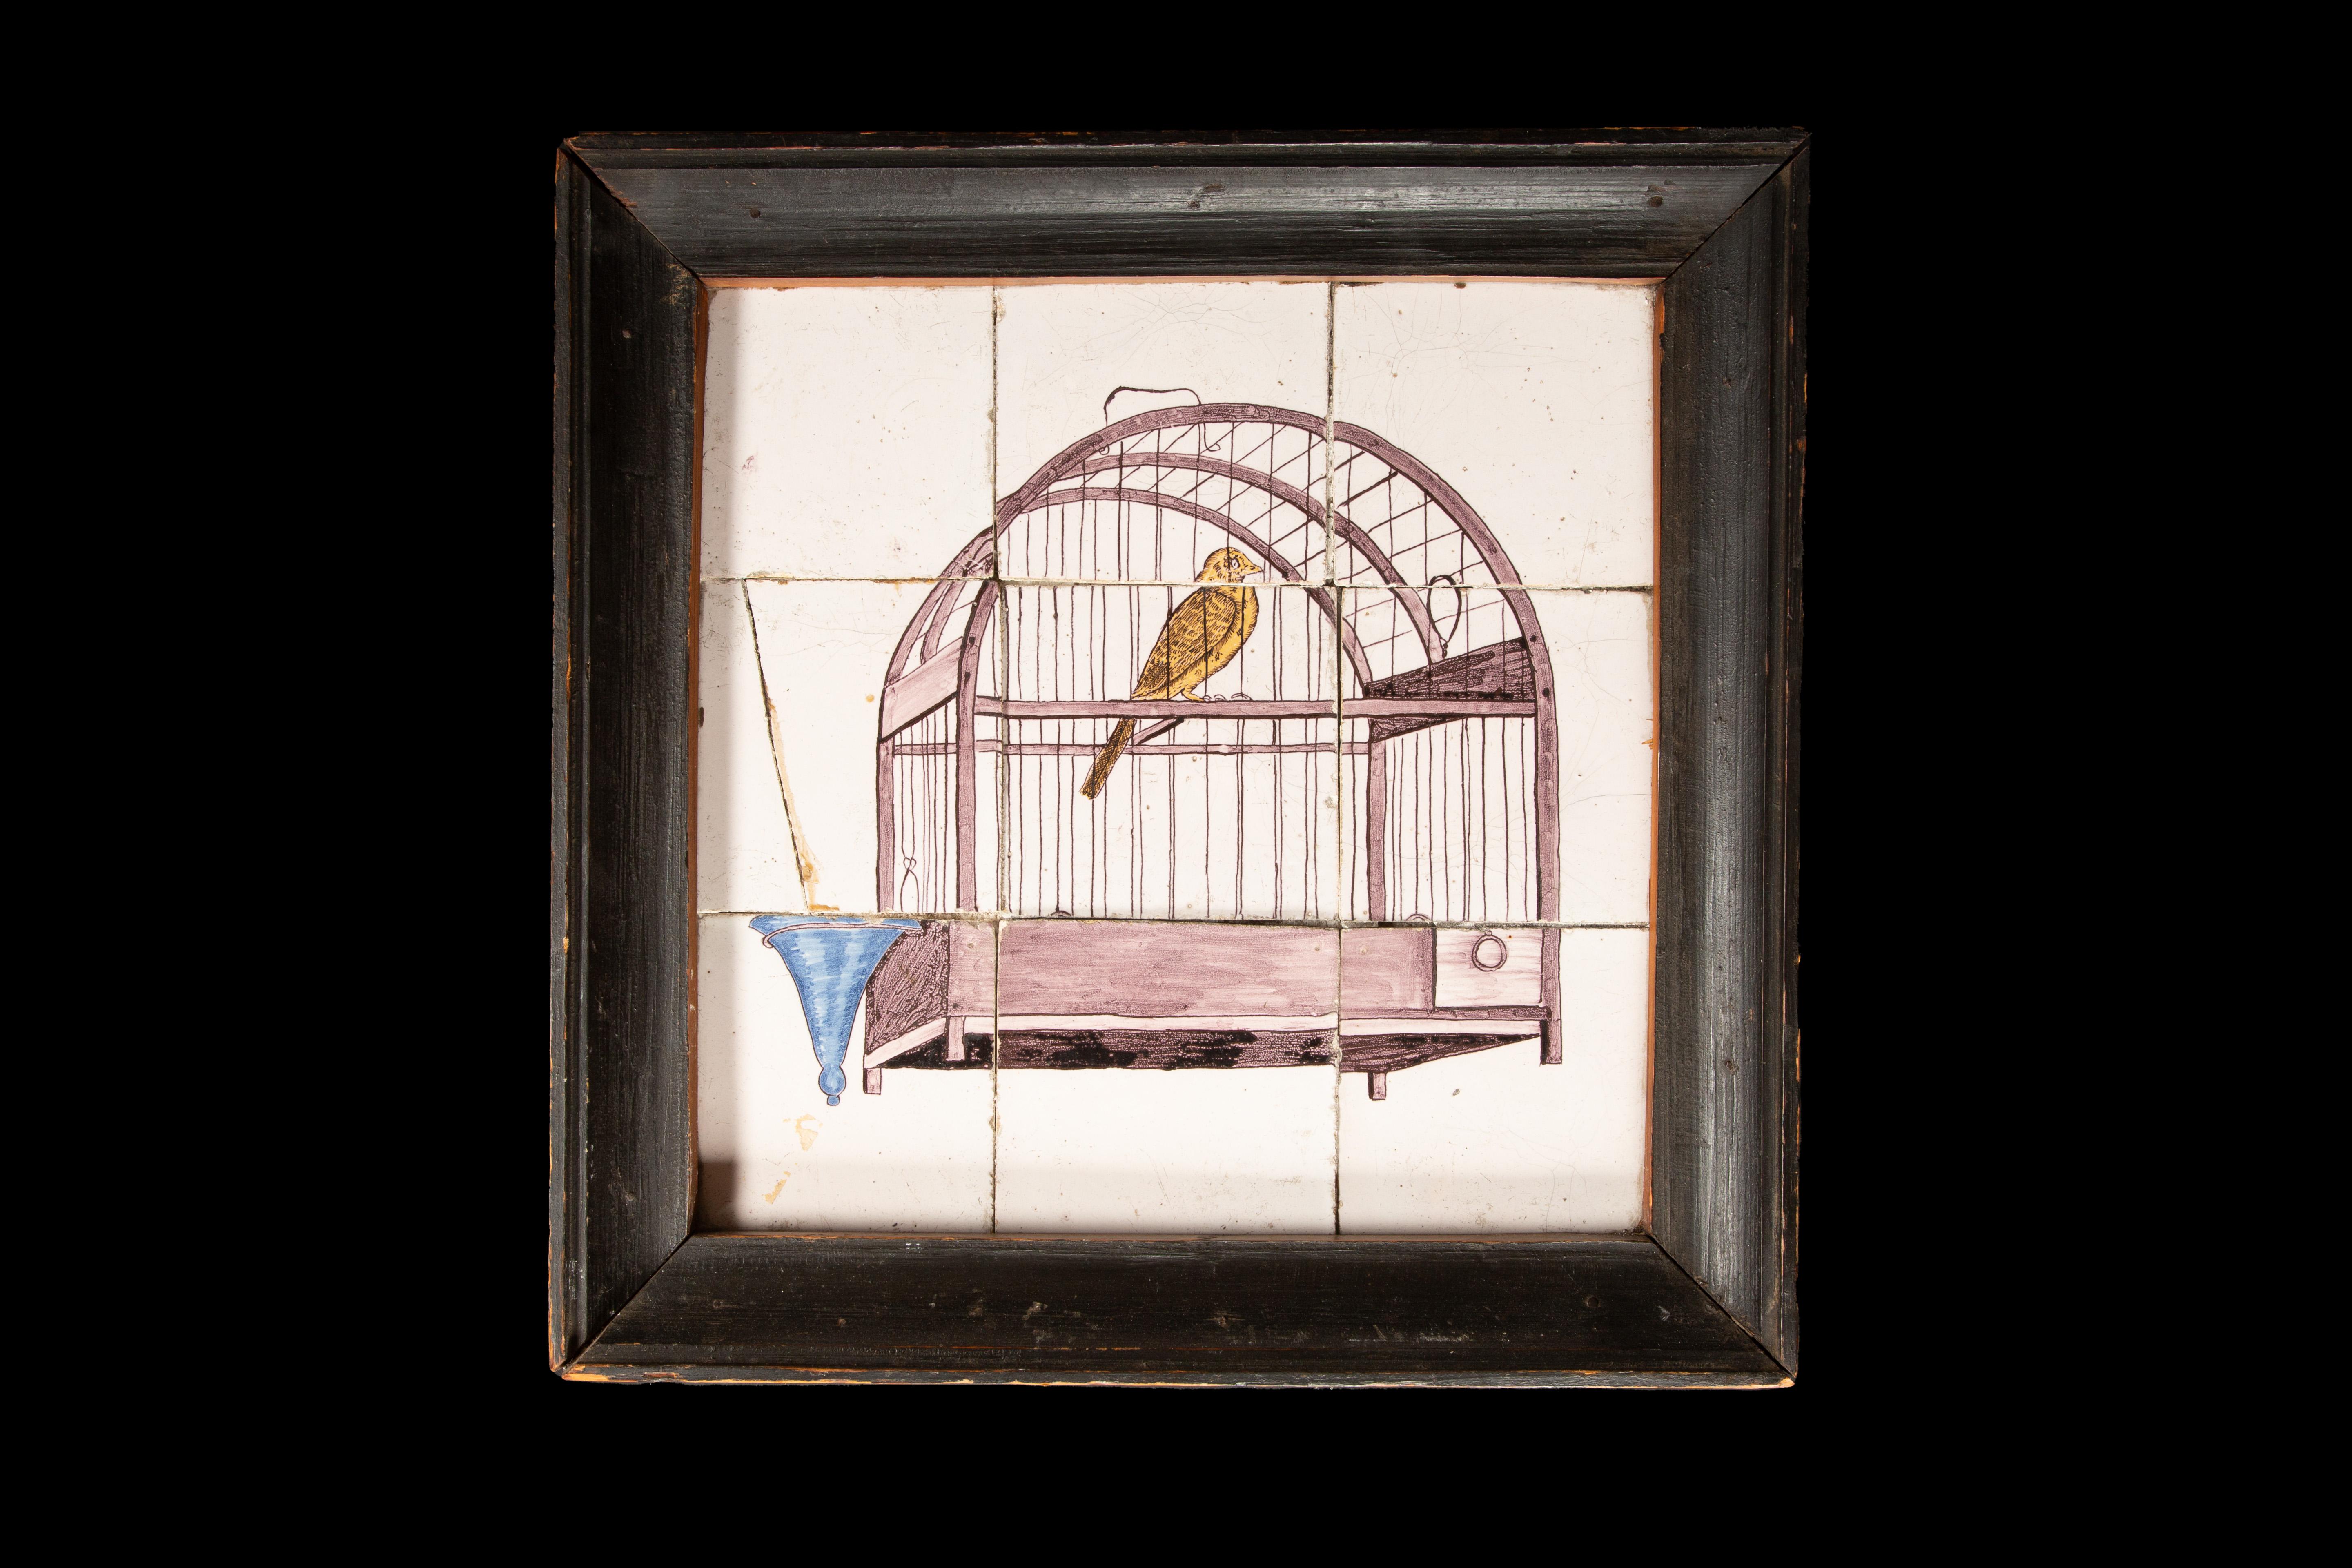 Diese aus neun Steingutfliesen gefertigte Tafel aus dem 18. Jahrhundert zeigt die faszinierende Darstellung eines Vogels in einem Käfig. Die zarten weißen Kacheln heben sich wunderbar vom weißen Hintergrund ab und betonen den kunstvoll gemalten